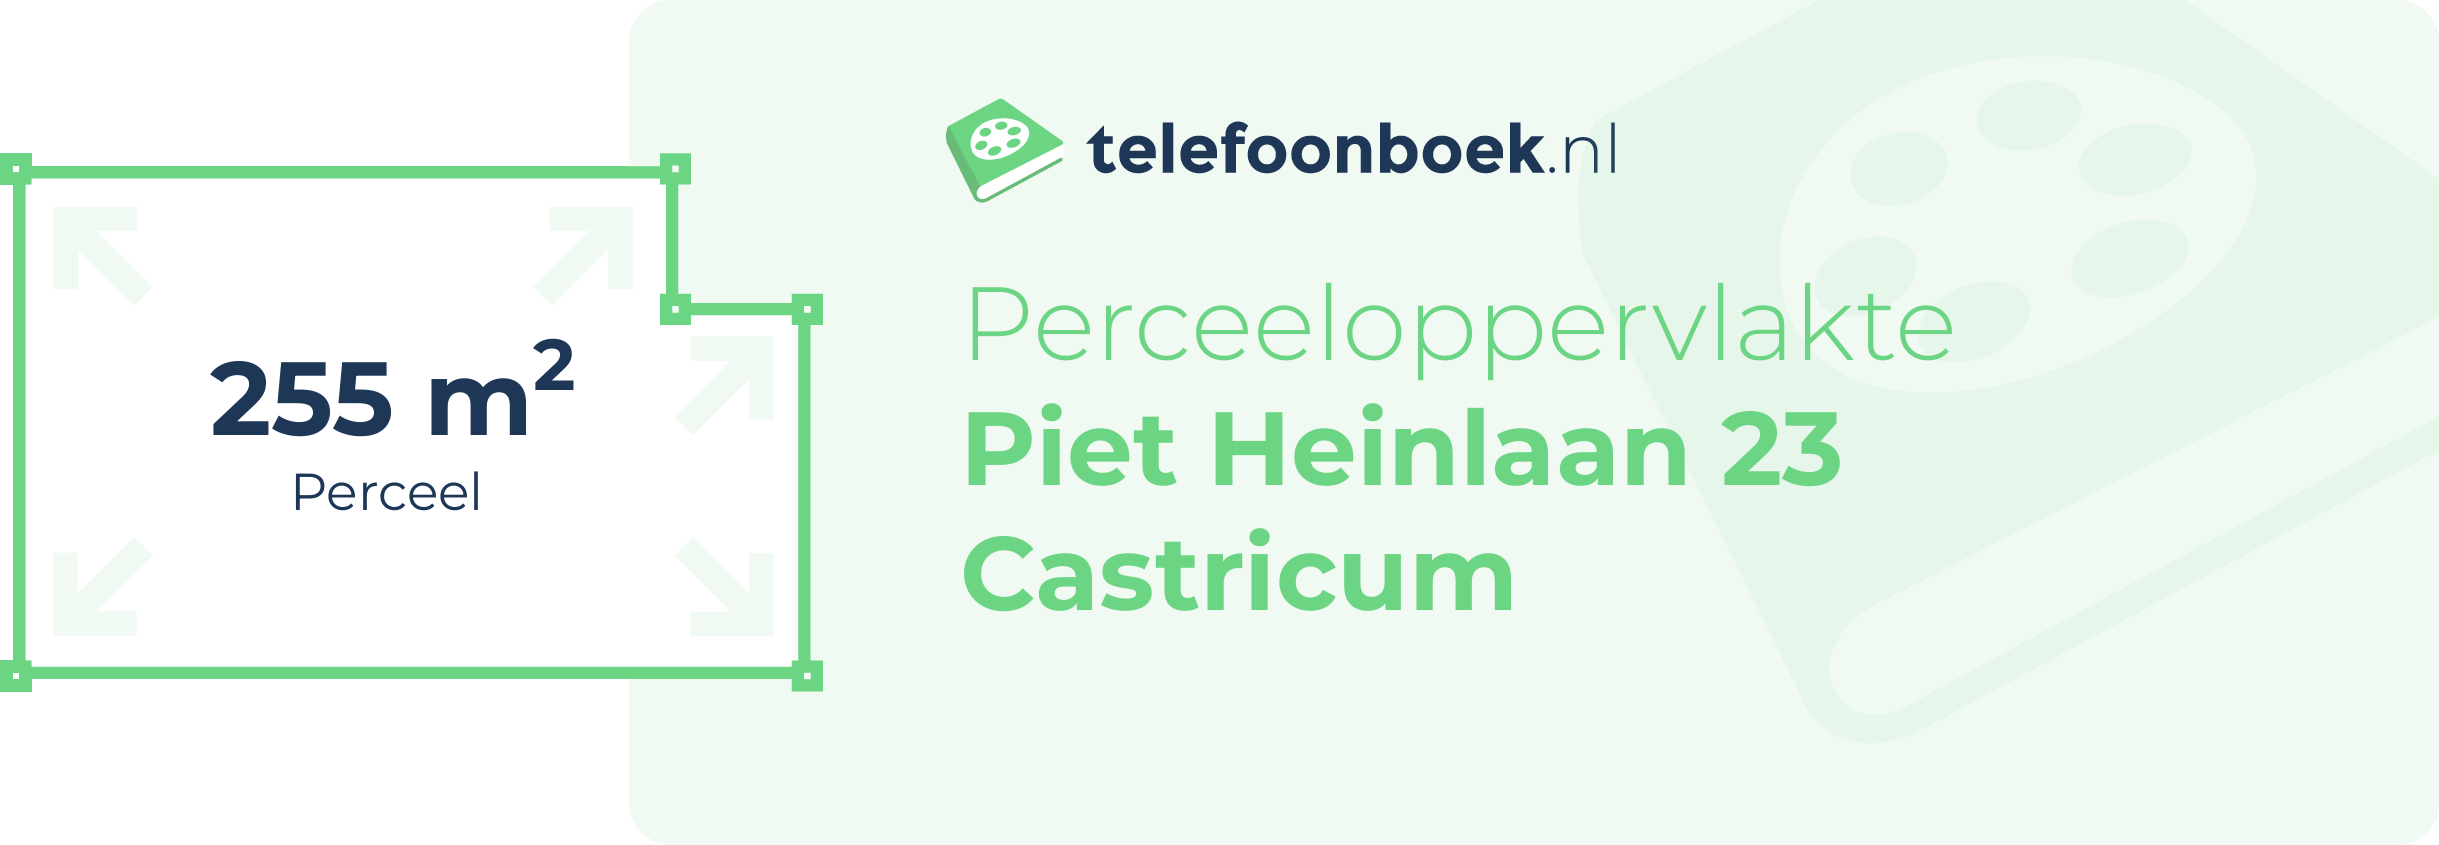 Perceeloppervlakte Piet Heinlaan 23 Castricum